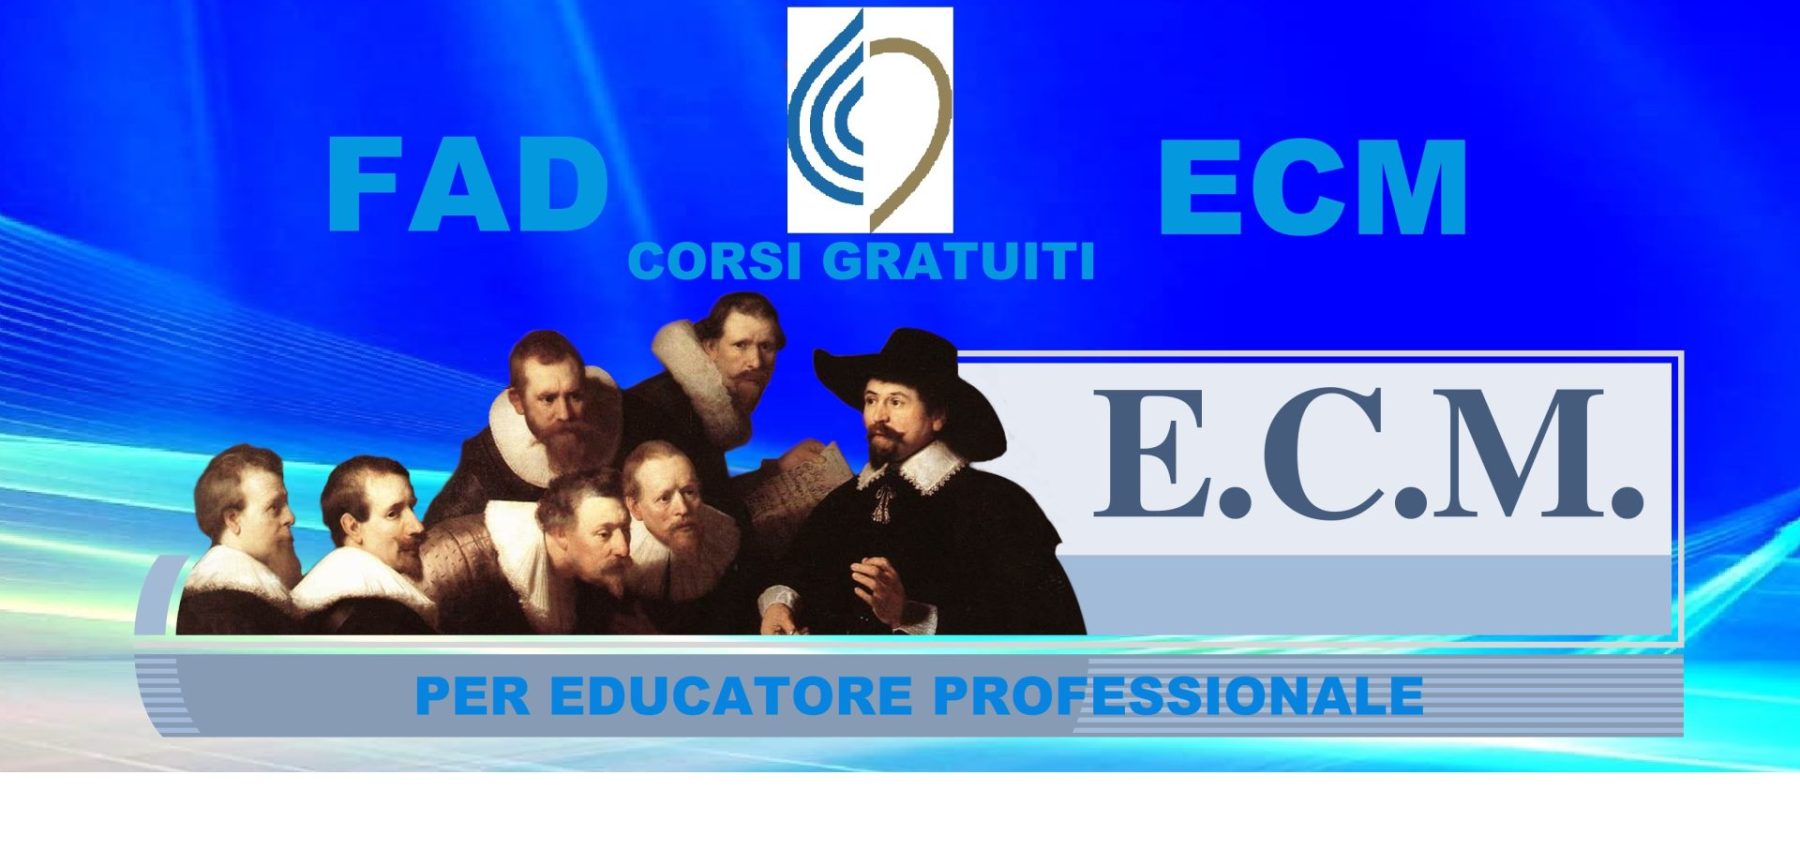 ecm gratis educatore professionale